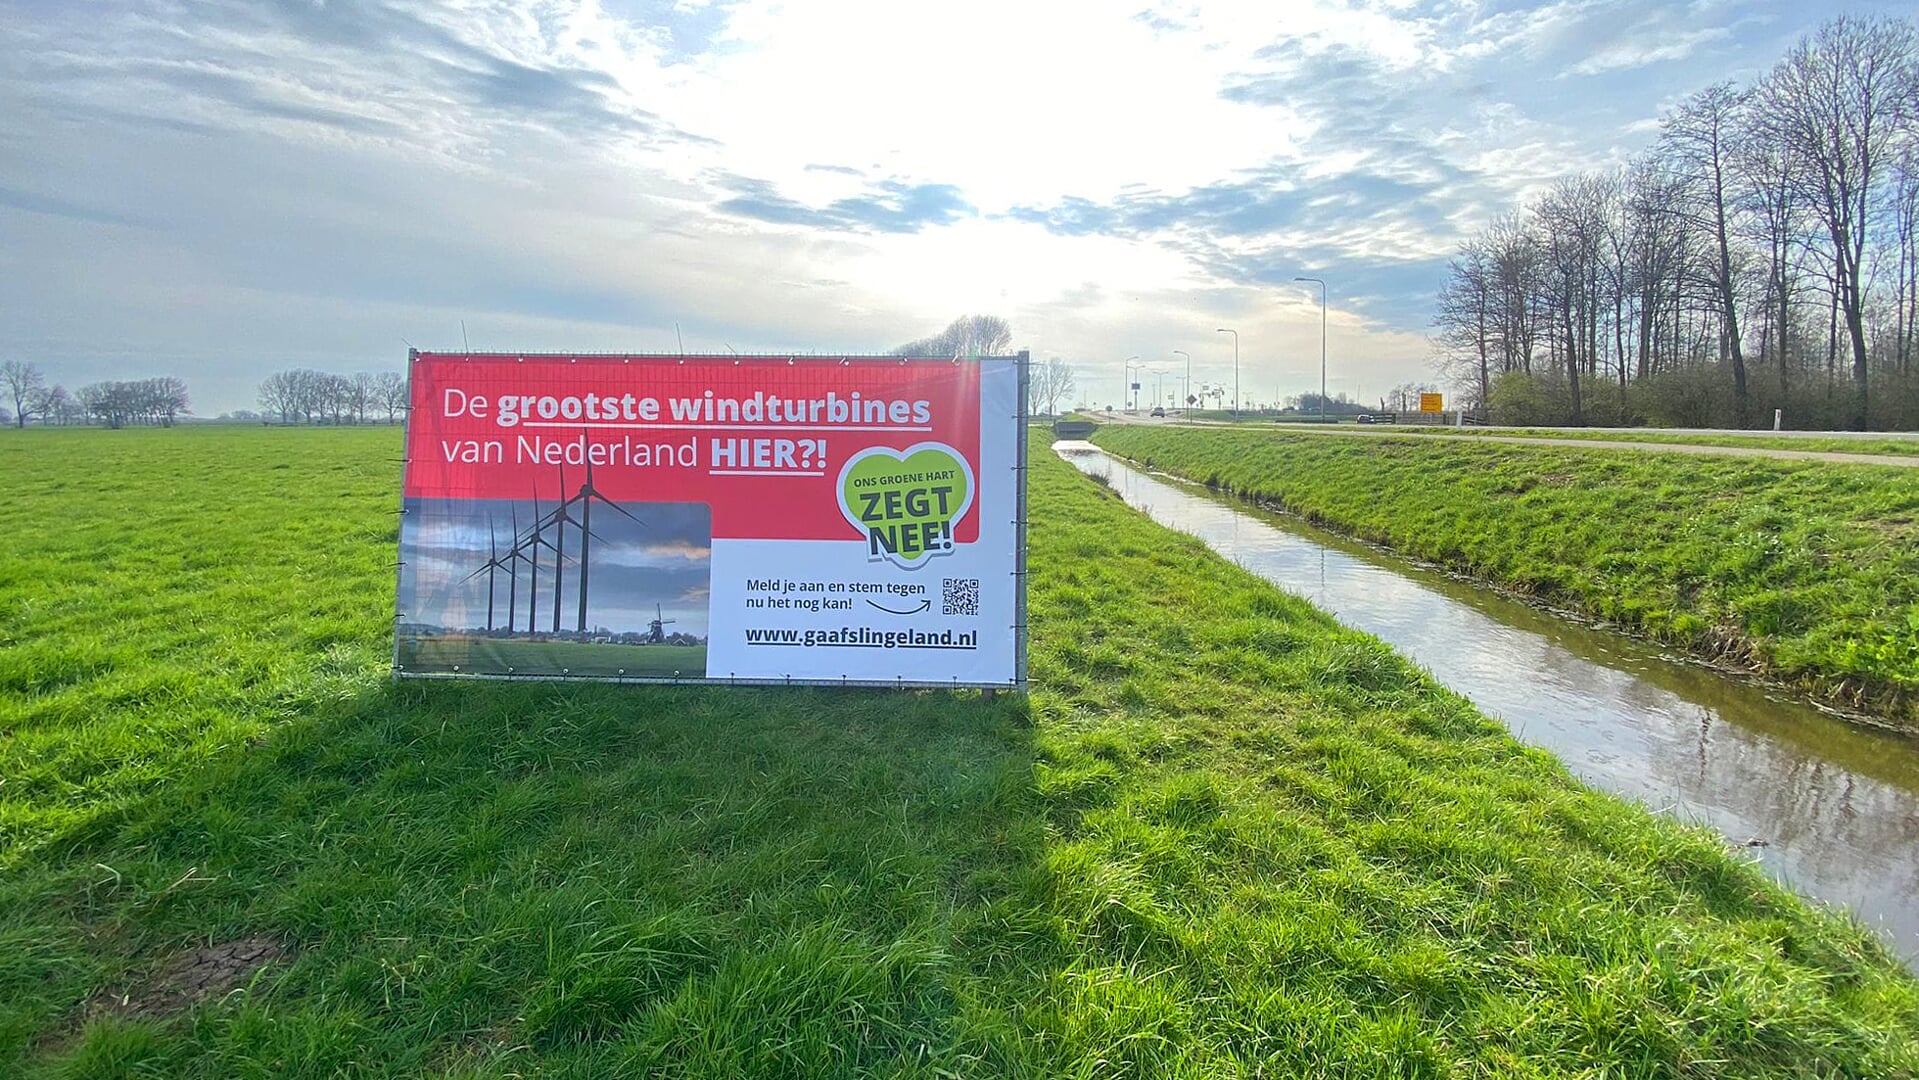 • De actiegroep Gaaf Slingeland hing afgelopen week in het gebied posters op en plaatste ook spandoeken.